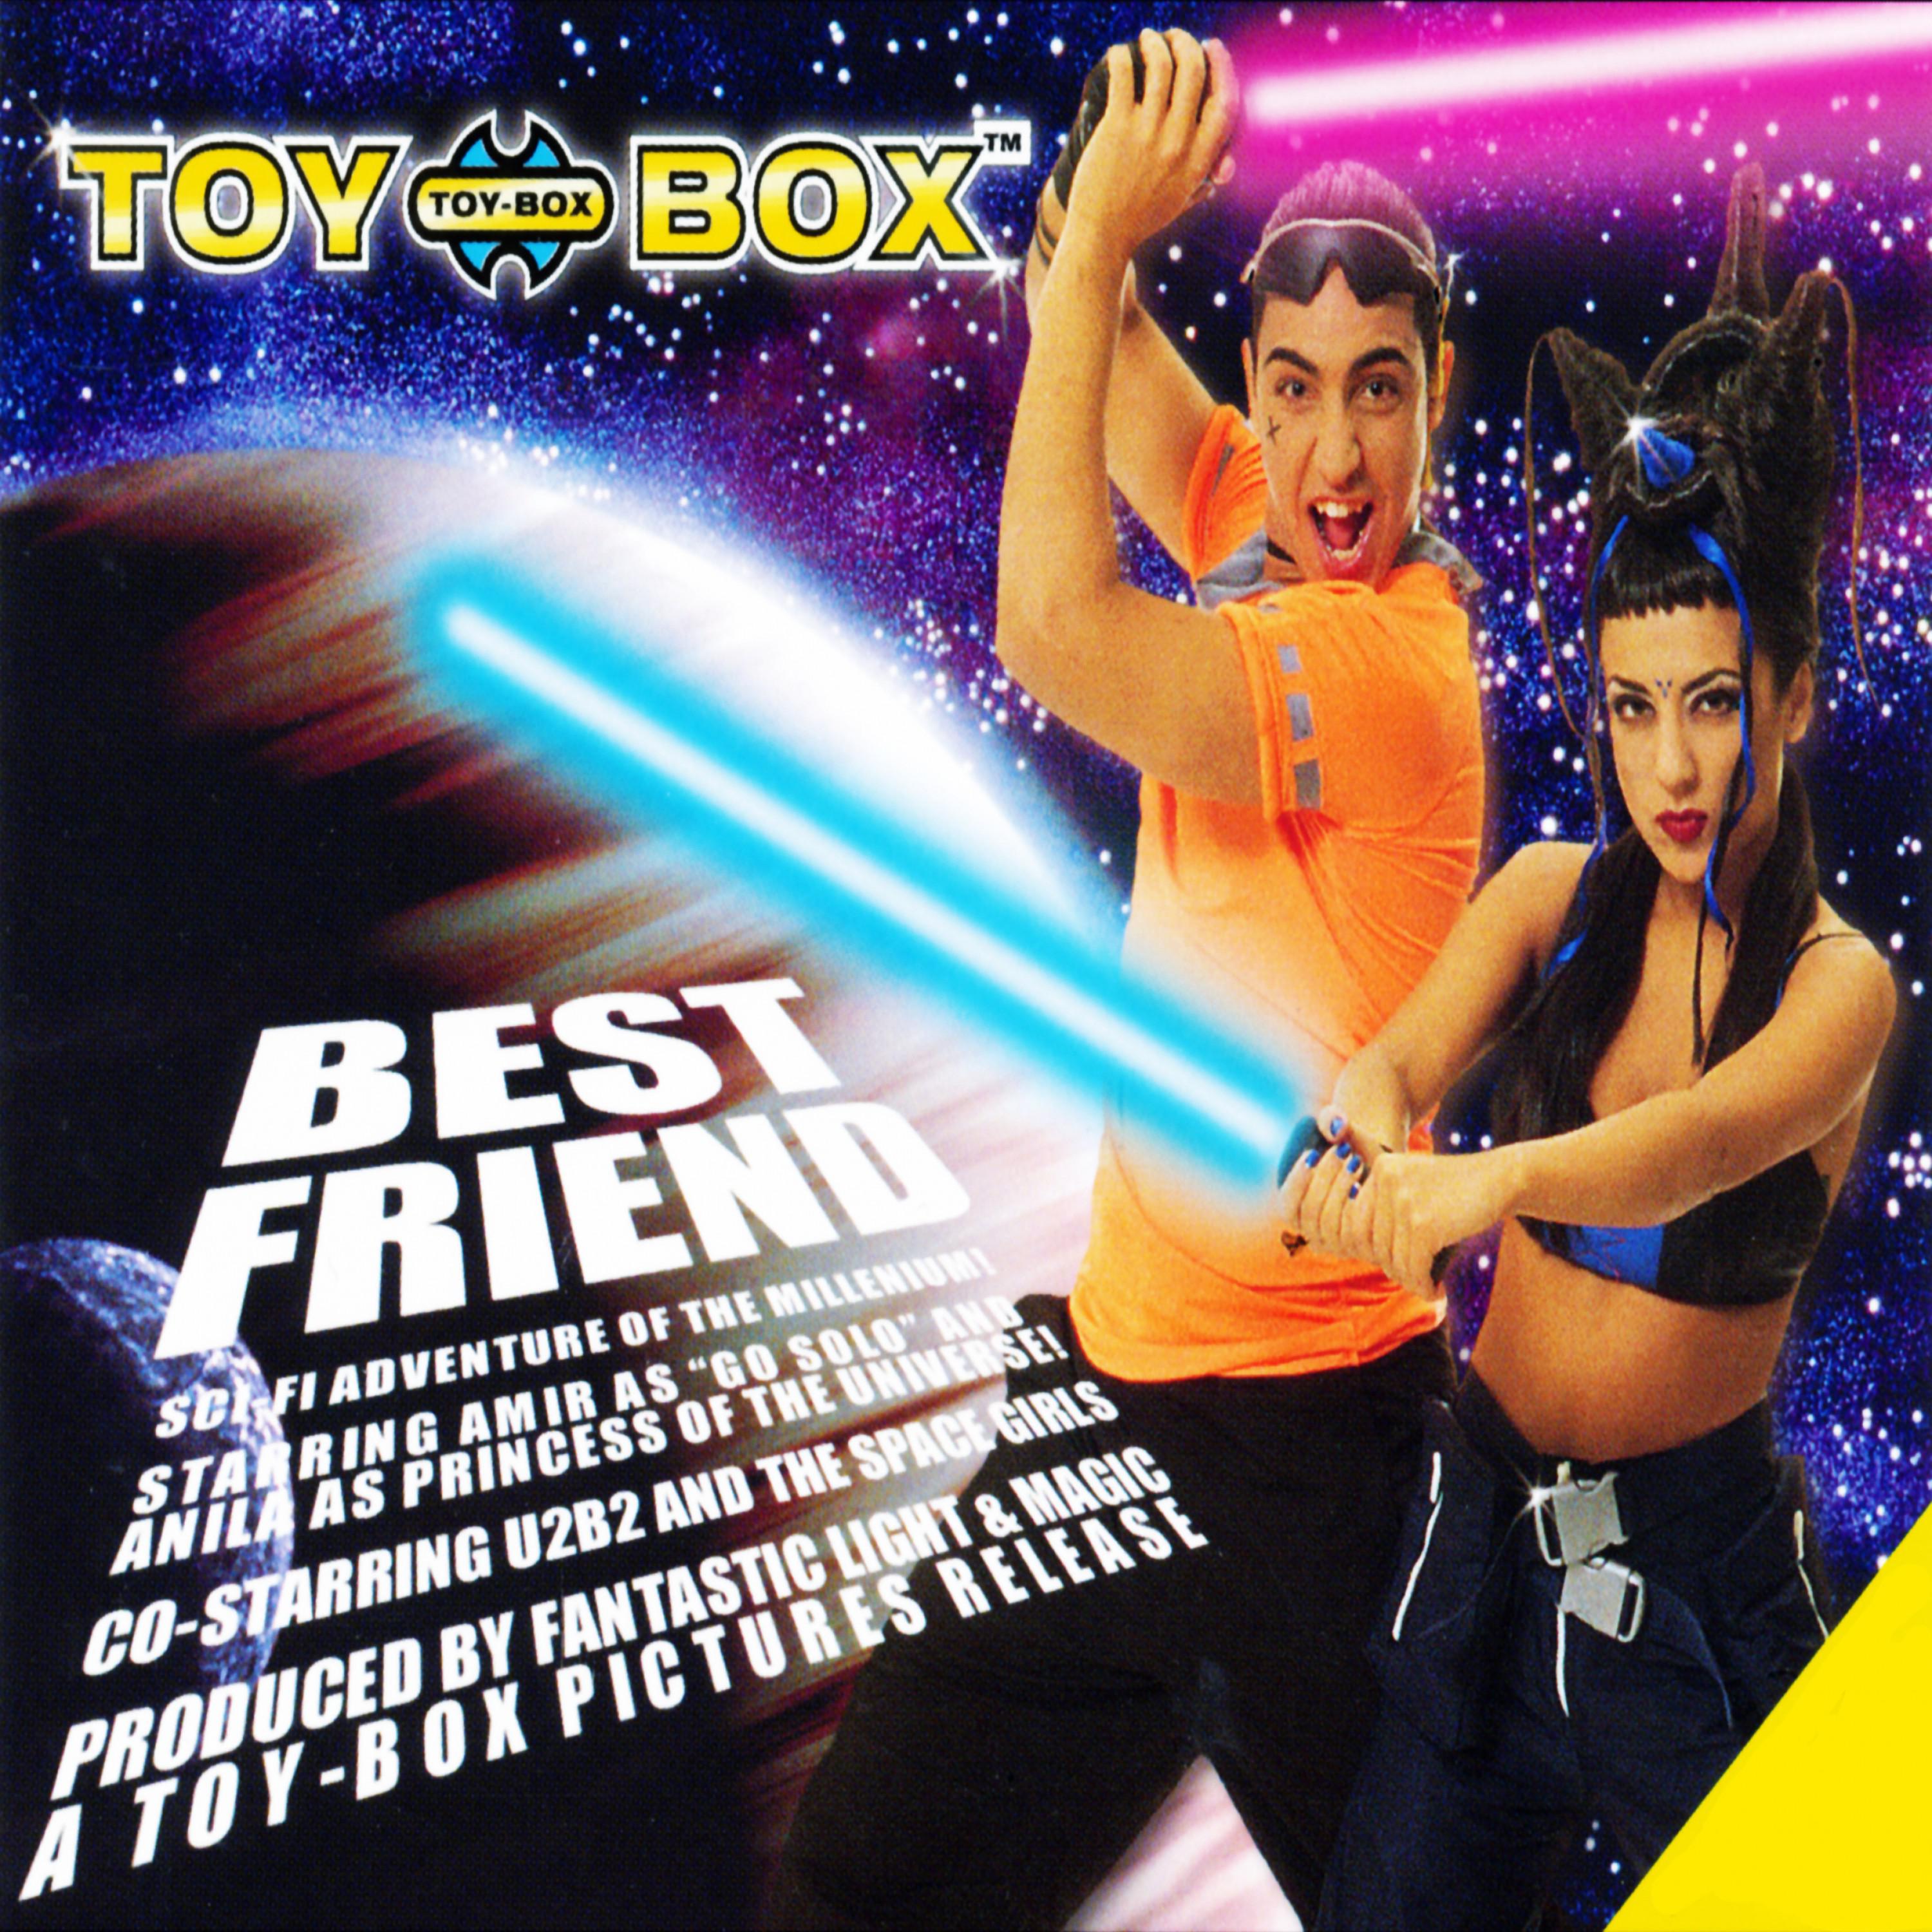 Бест френдс песня. Toy Box best friend. Трек best friend. Песня best friend Toy Box обложка. Toy-Box best friend перевод.